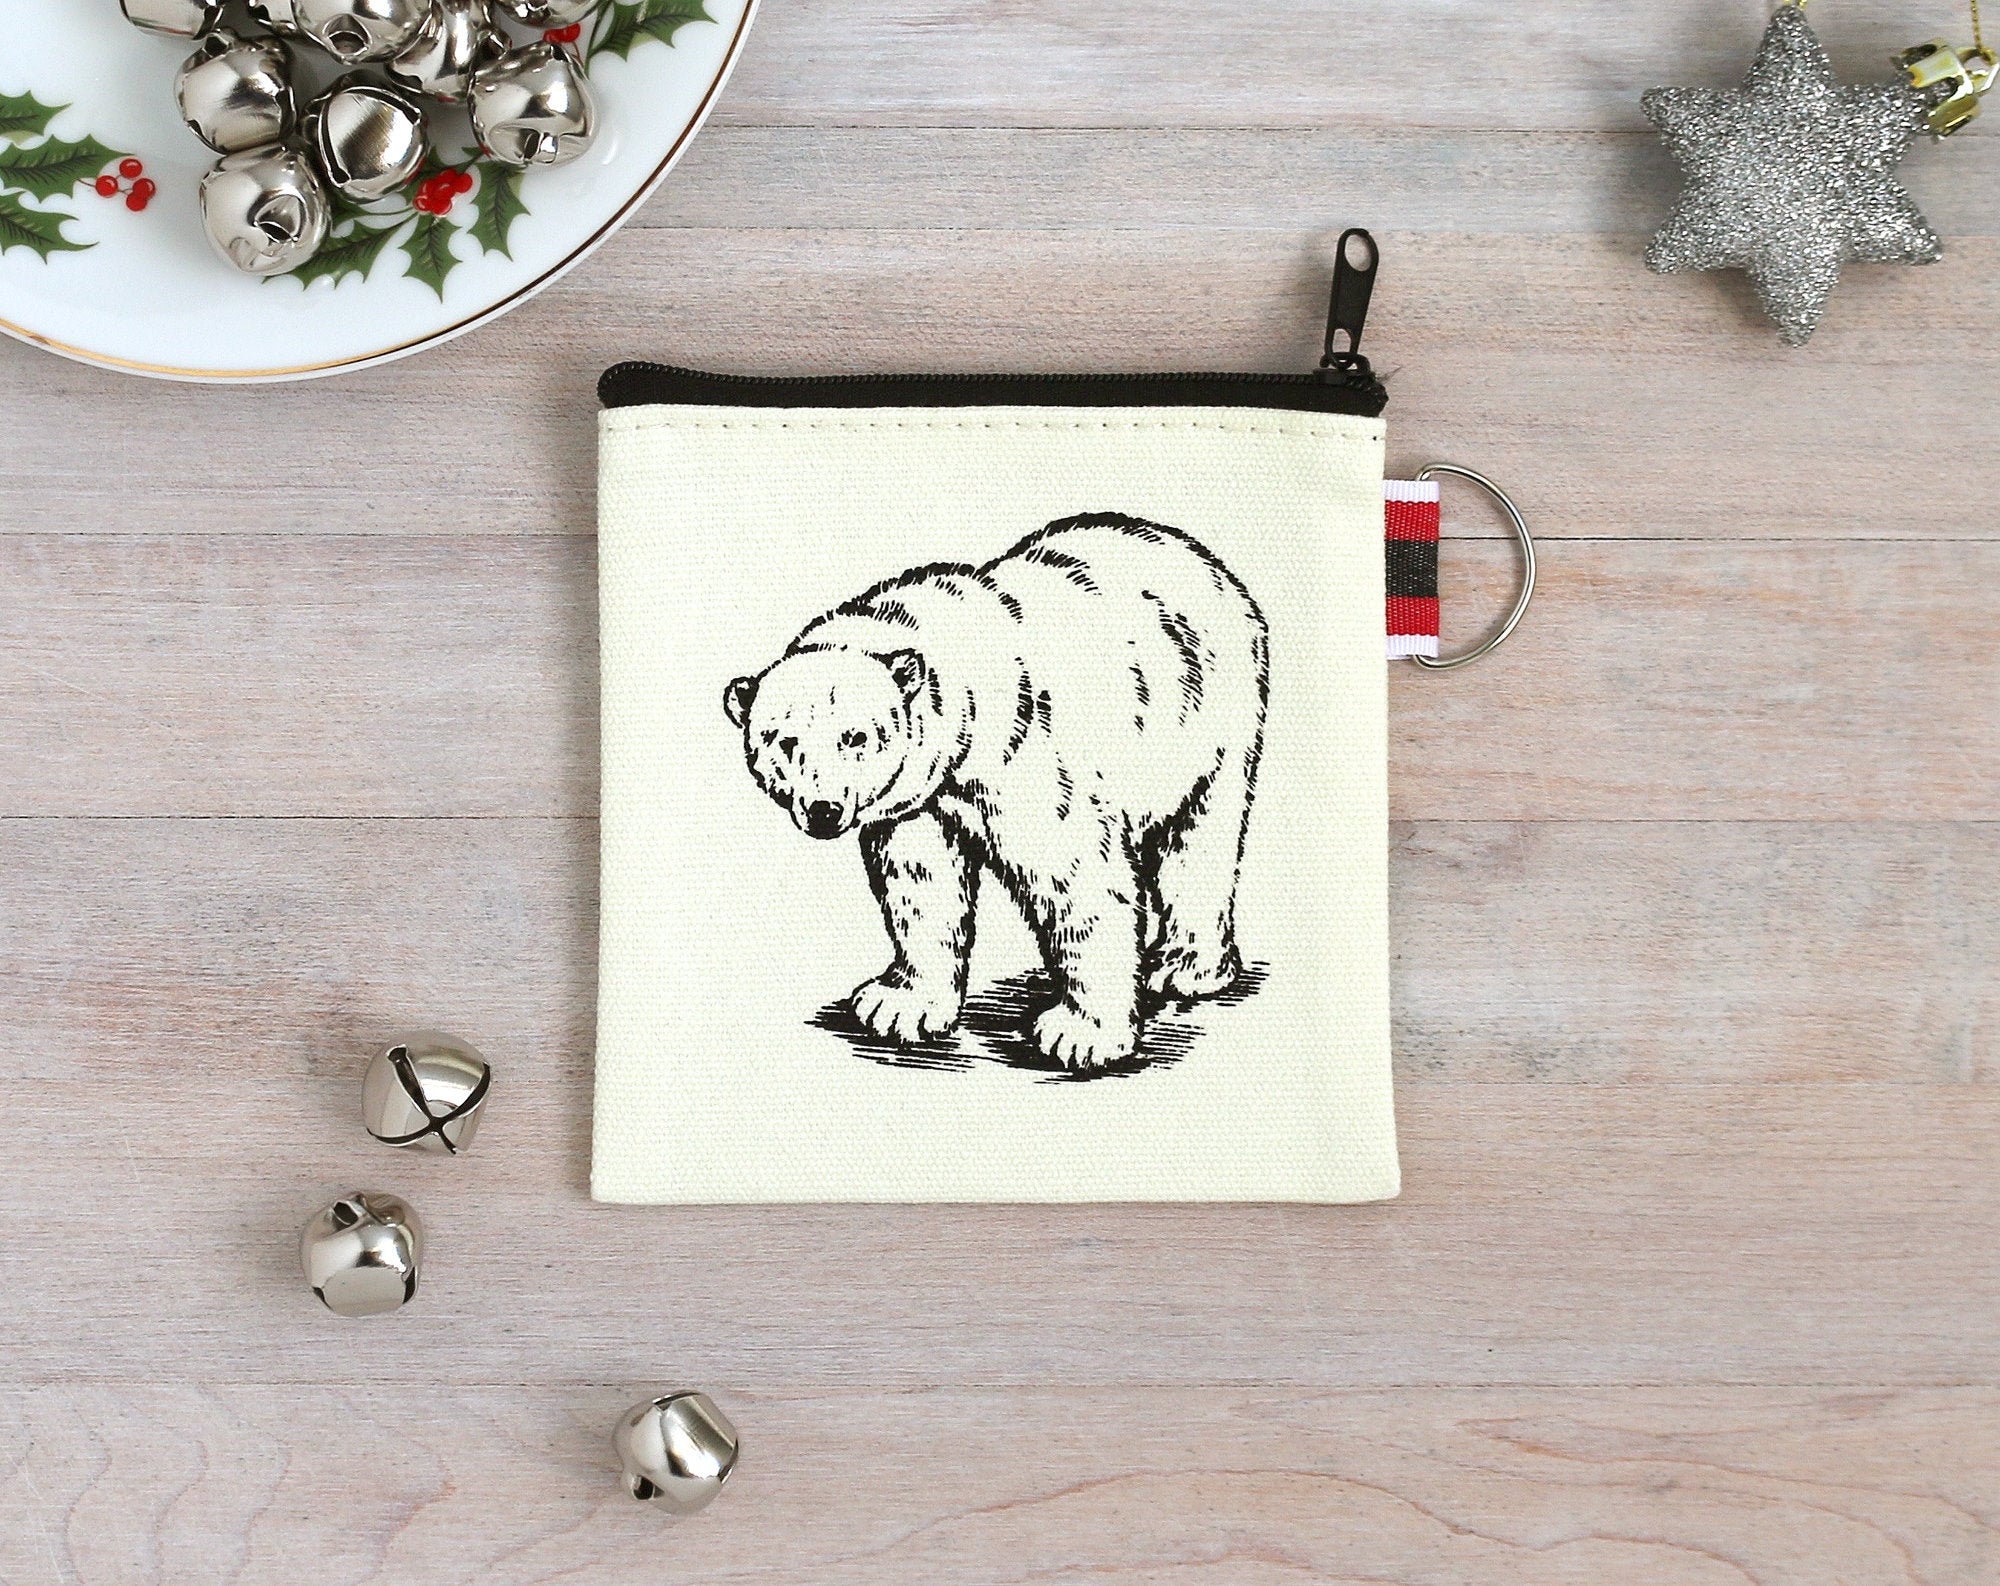 polar bear coin purse